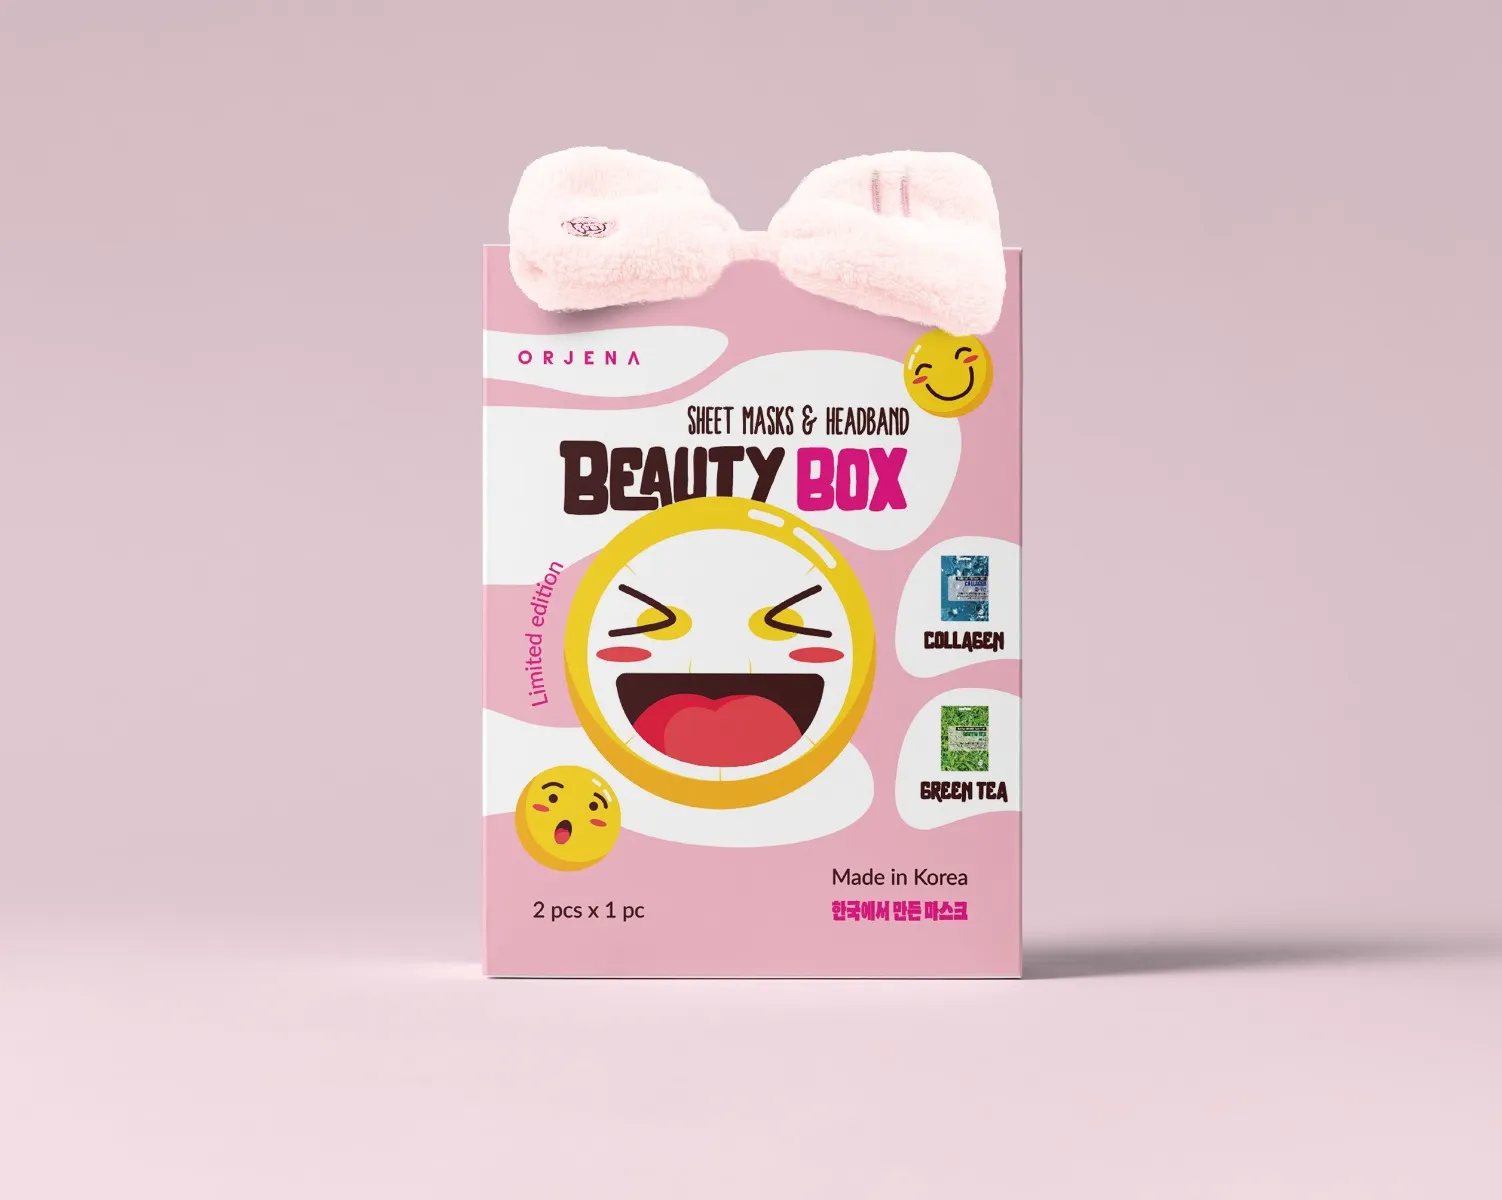 Orjena Beauty Box zestaw maseczek w płachcie z opaską kosmetyczną, 1 szt.